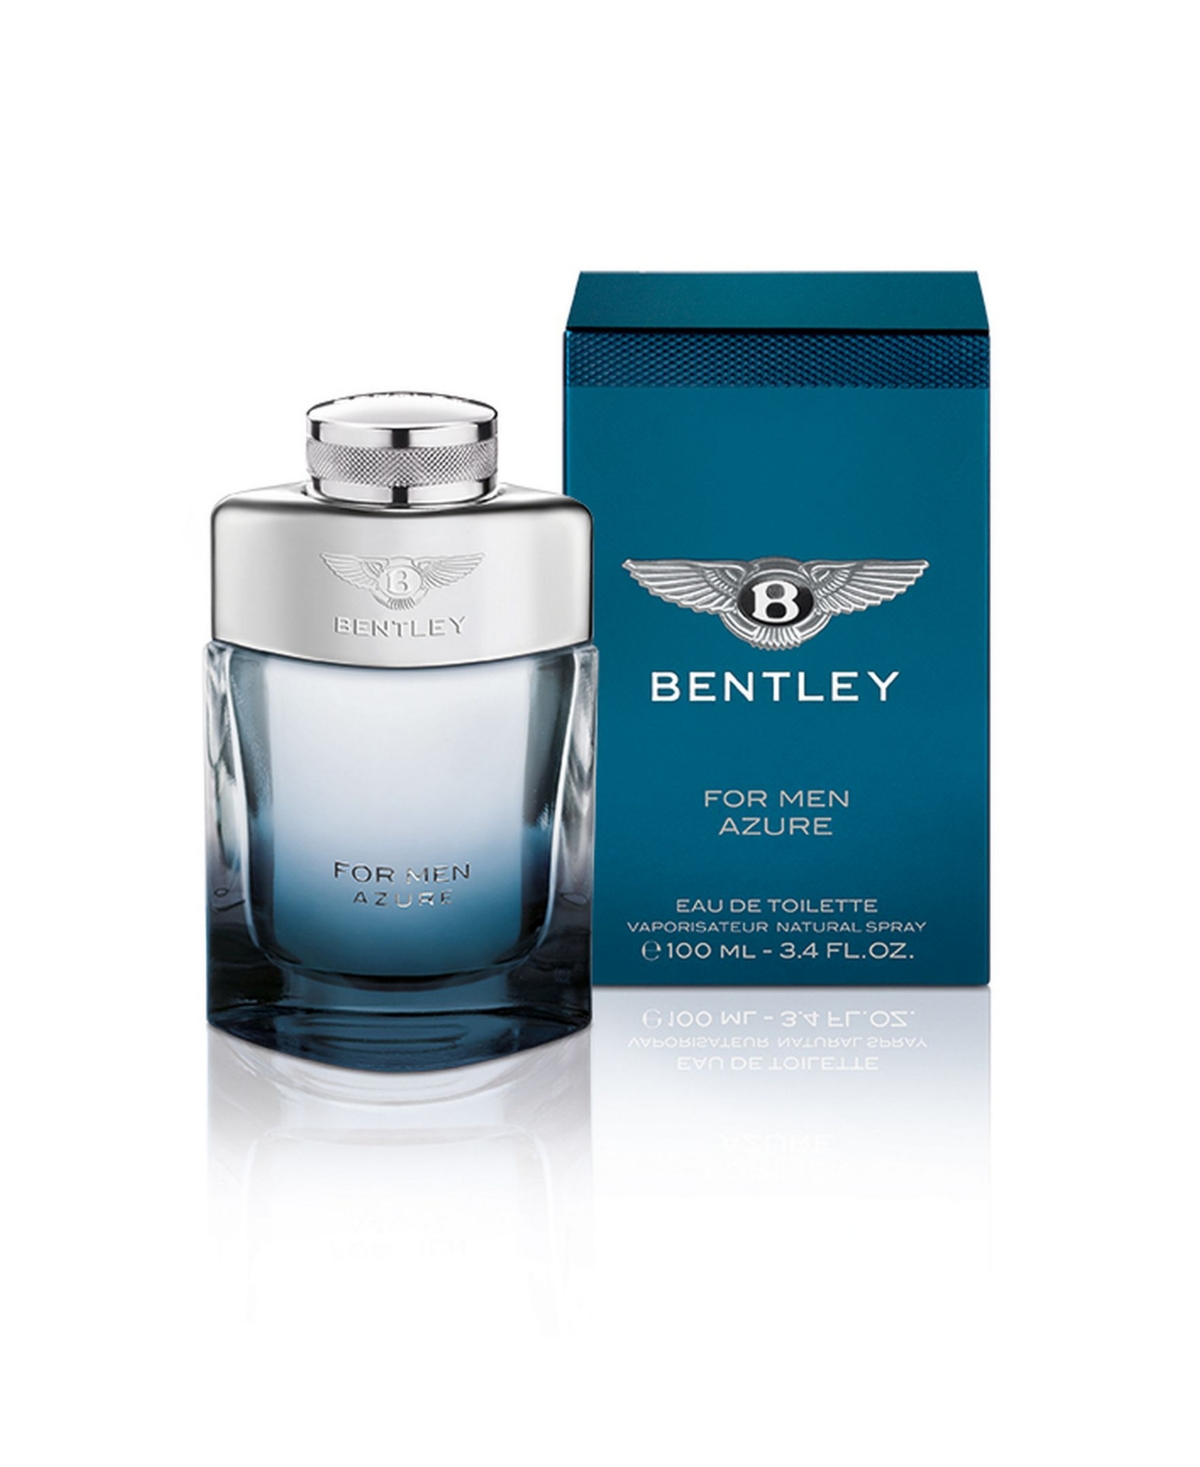 Bentley Azure For Men Eau De Toilette, 3.4 Oz